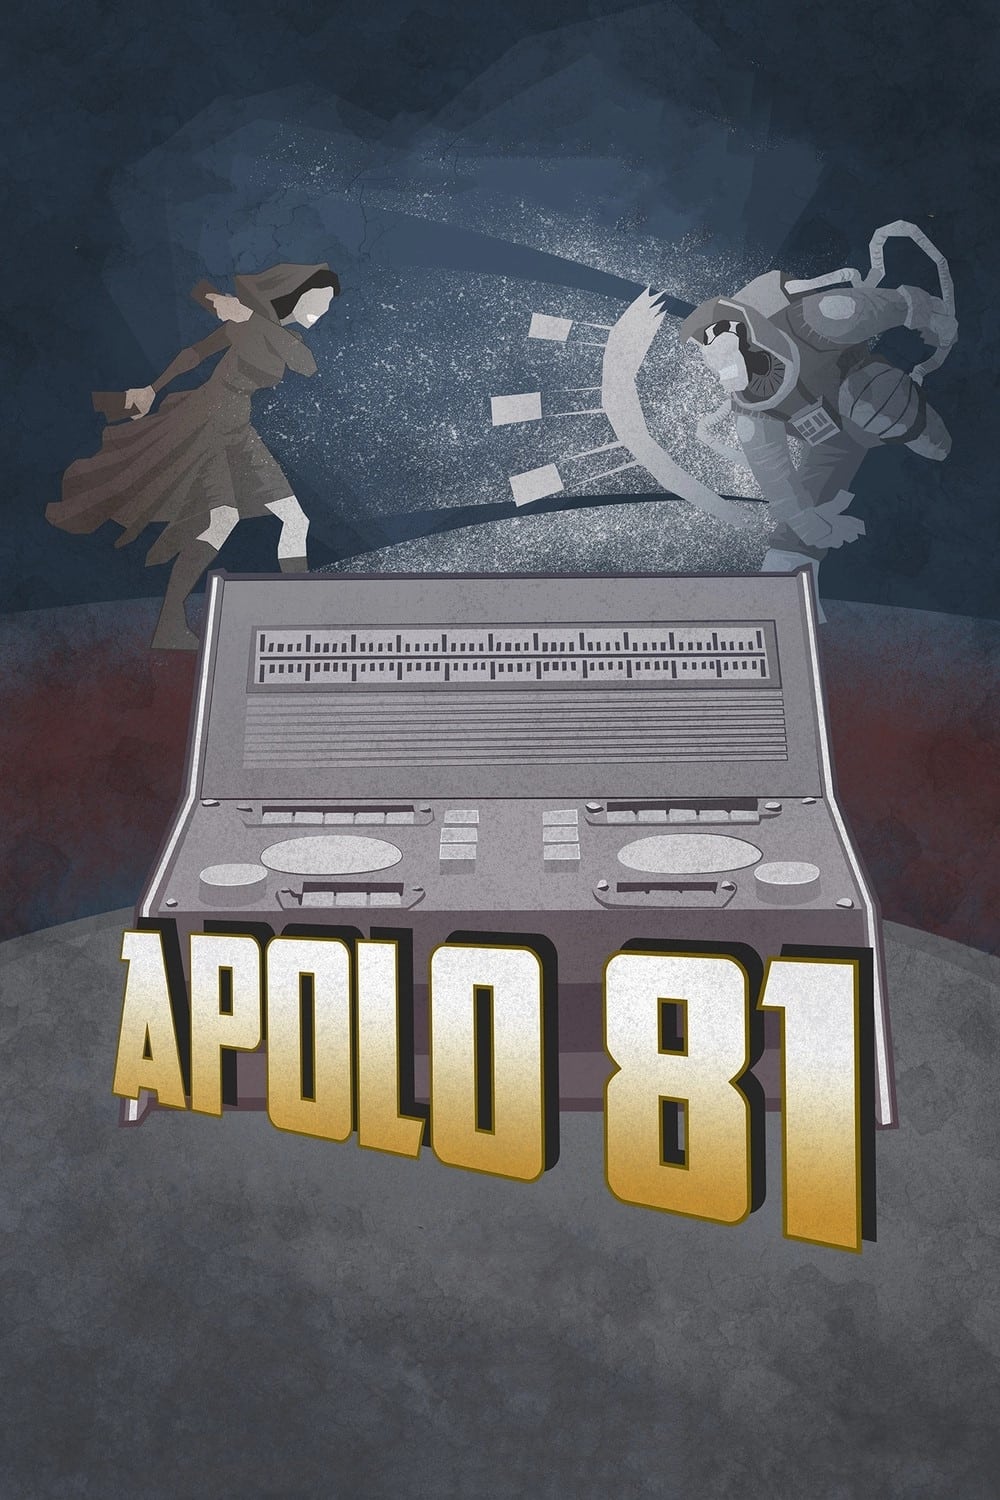 Apolo 81